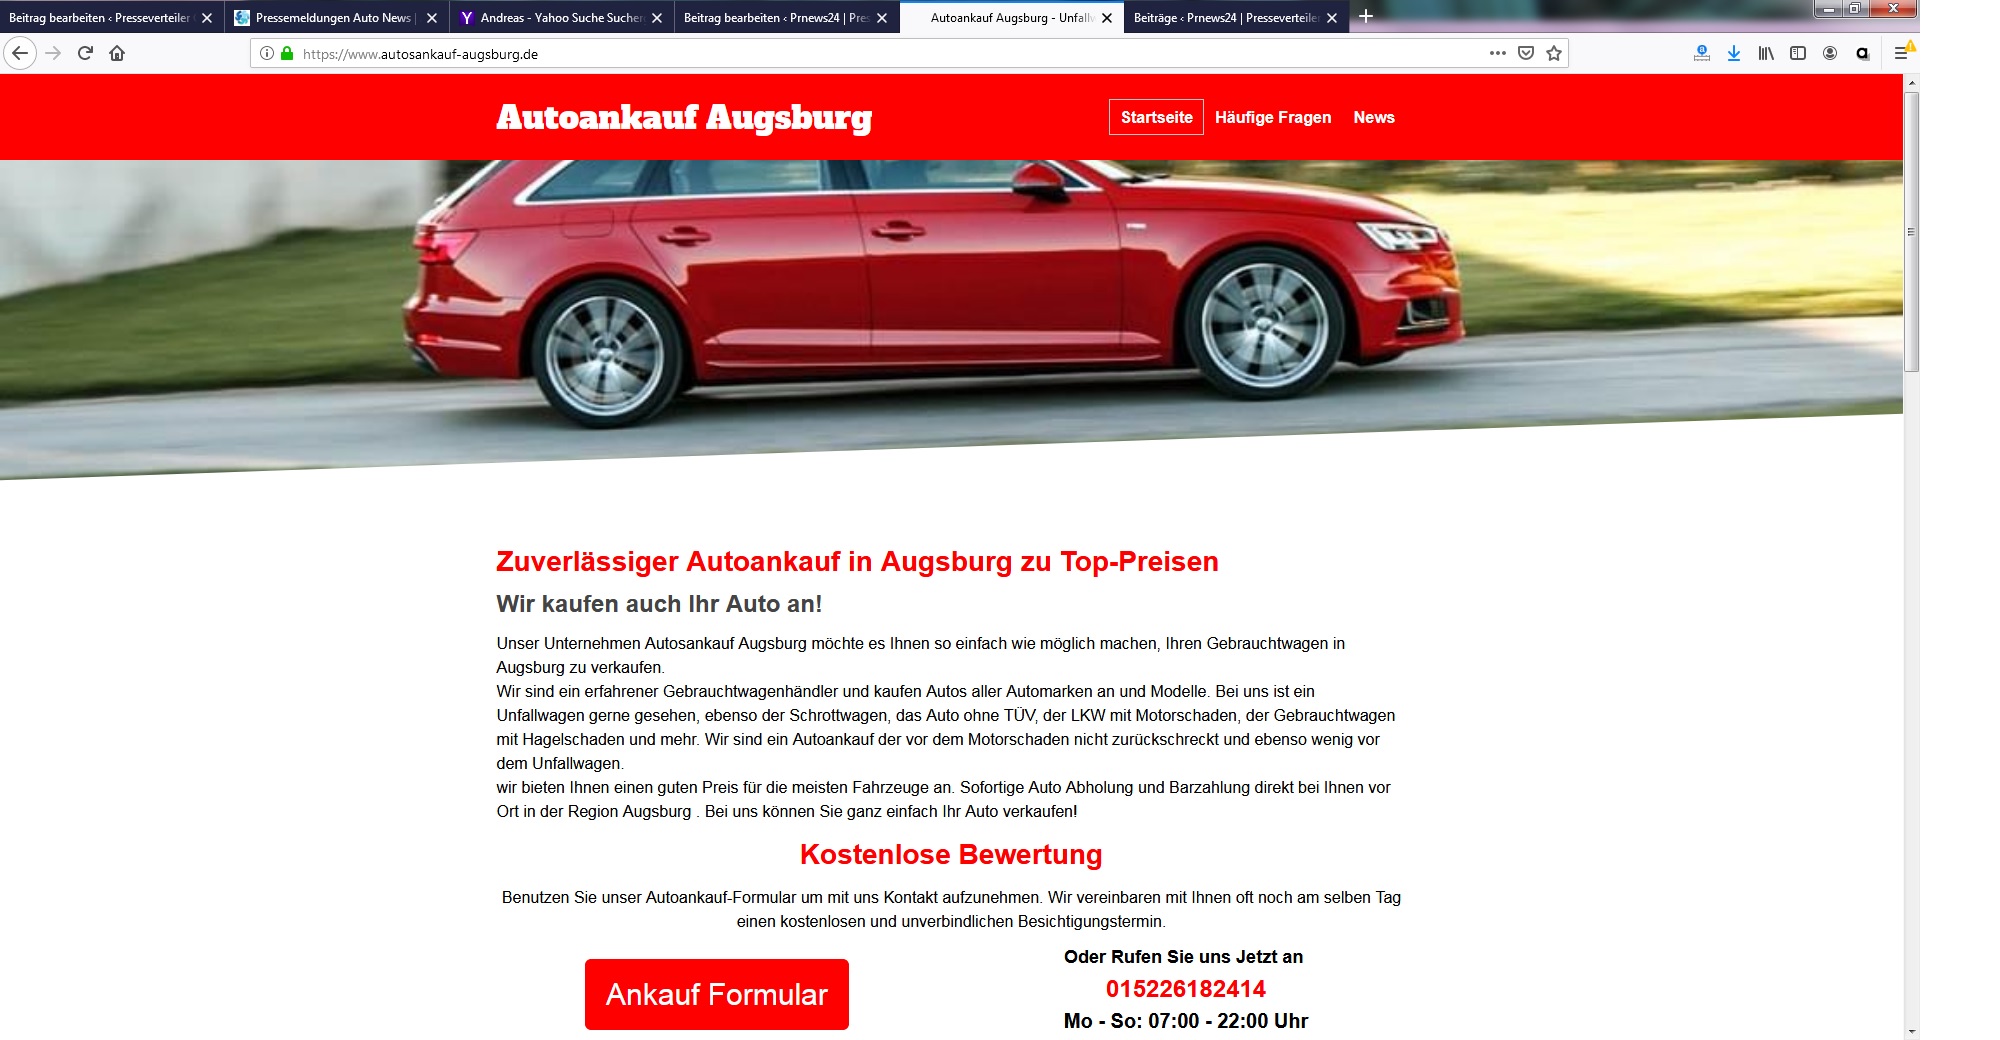 gebrauchtwagenverkauf mit system autosankauf in augsburg - Gebrauchtwagenverkauf mit System: Autosankauf in Augsburg